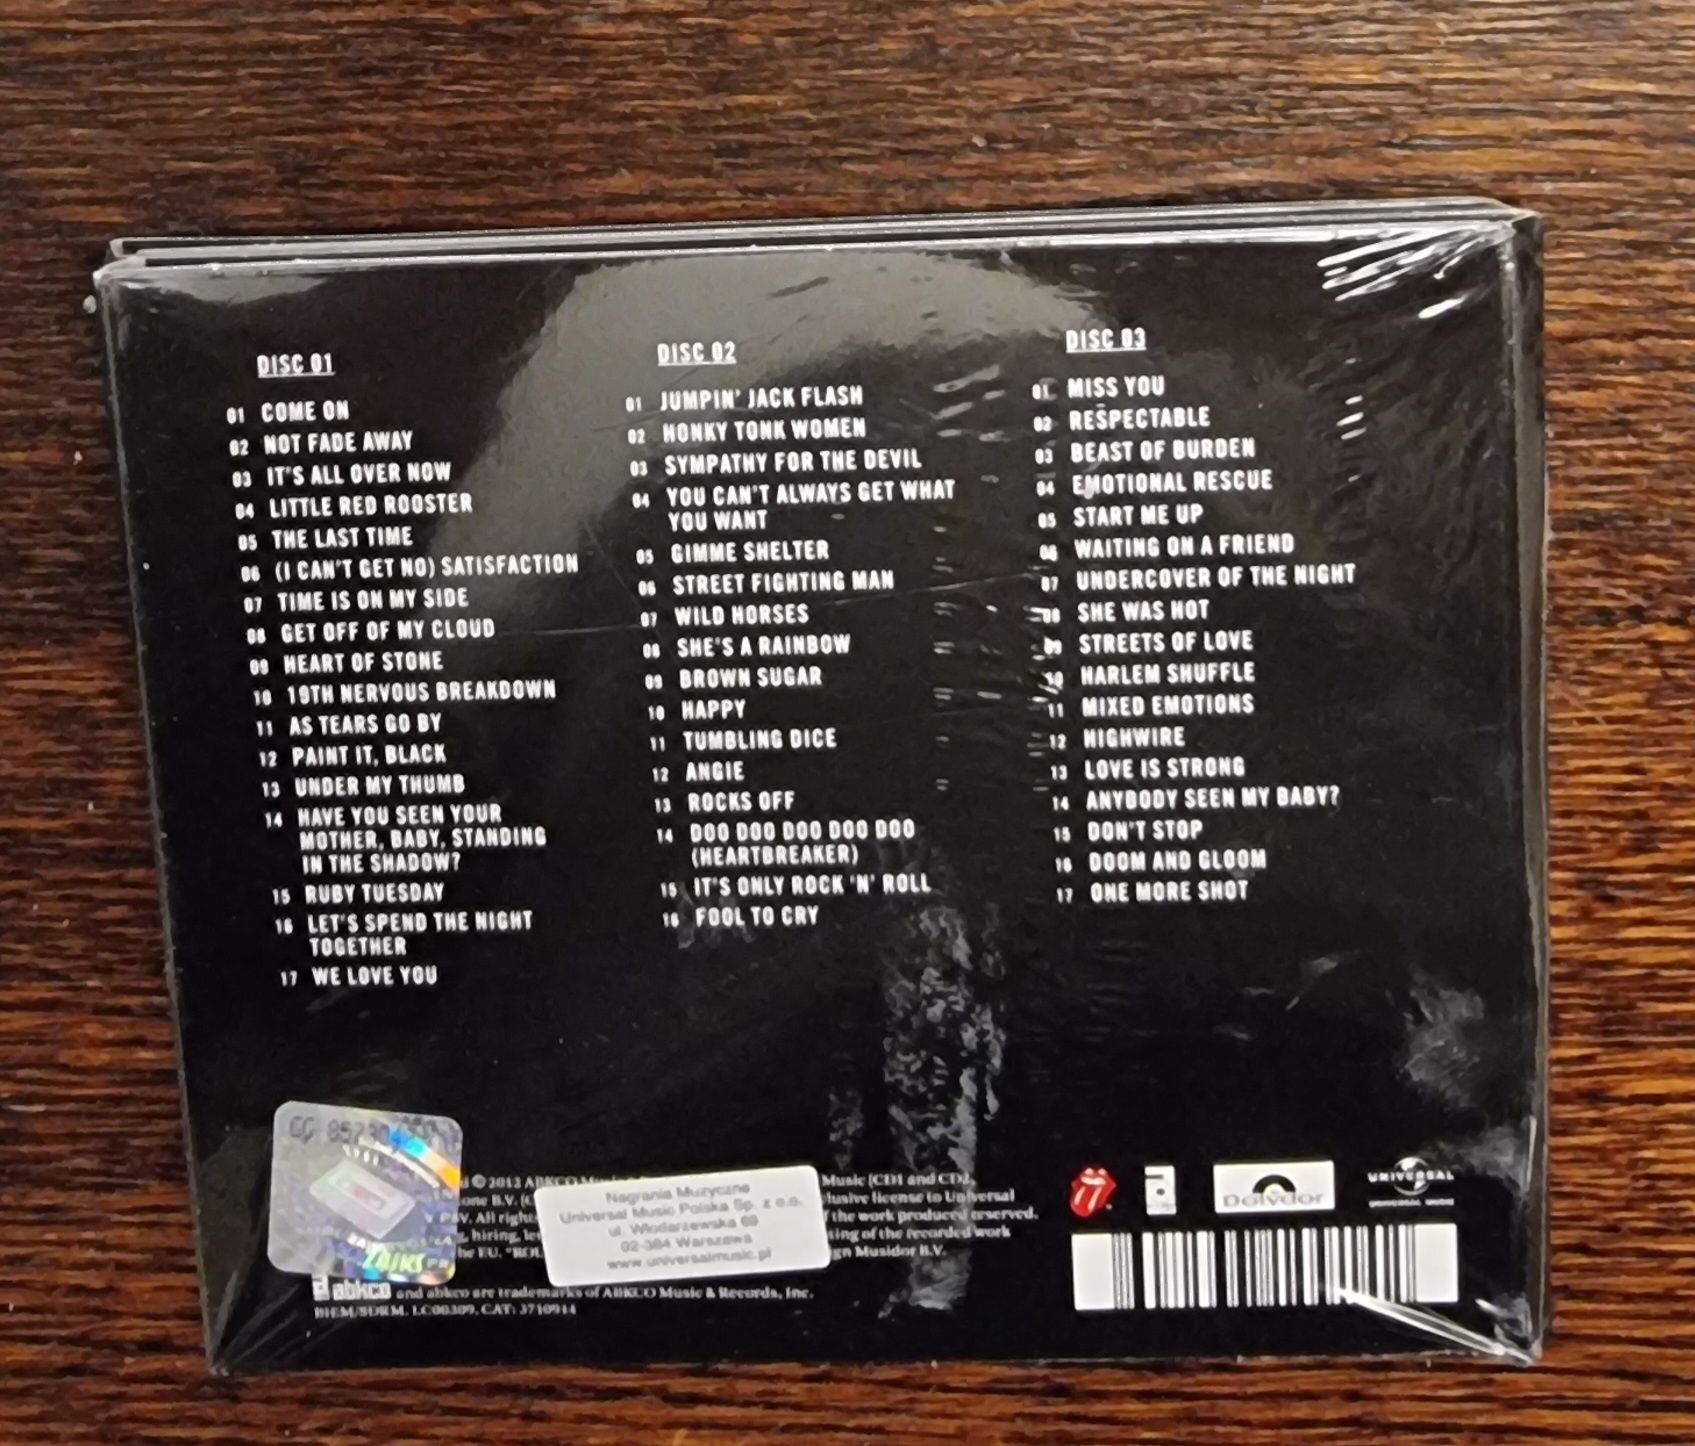 The Rolling Stones Grrr! NOWE! 3 CD gratka dla kolekcjonerów!